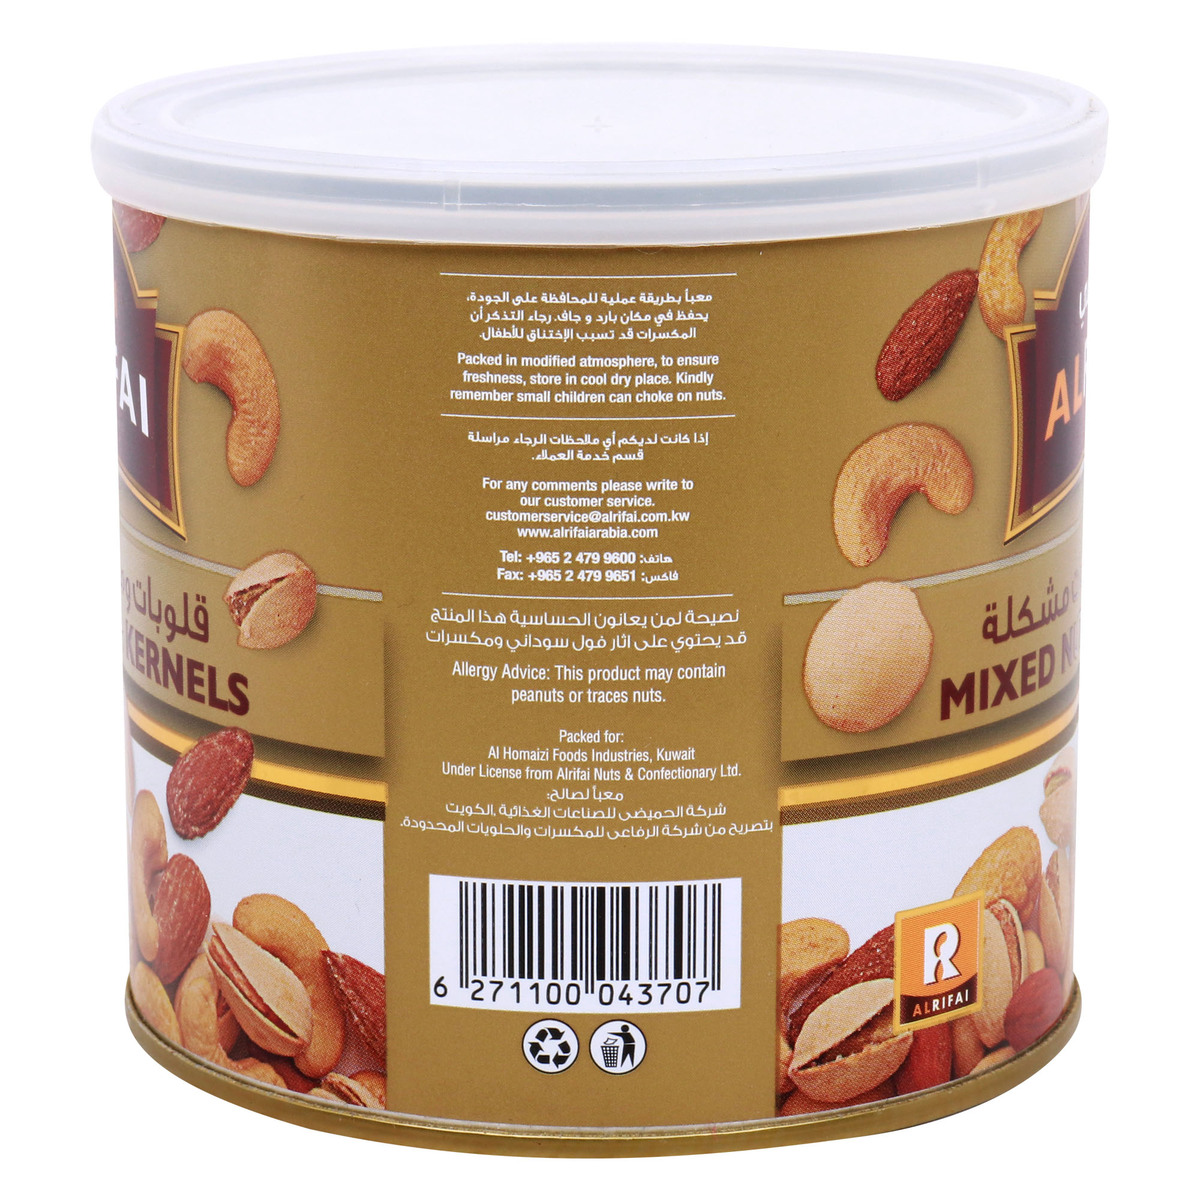 Al Rifai Mixed Nuts & Kernels Tin, 220 g